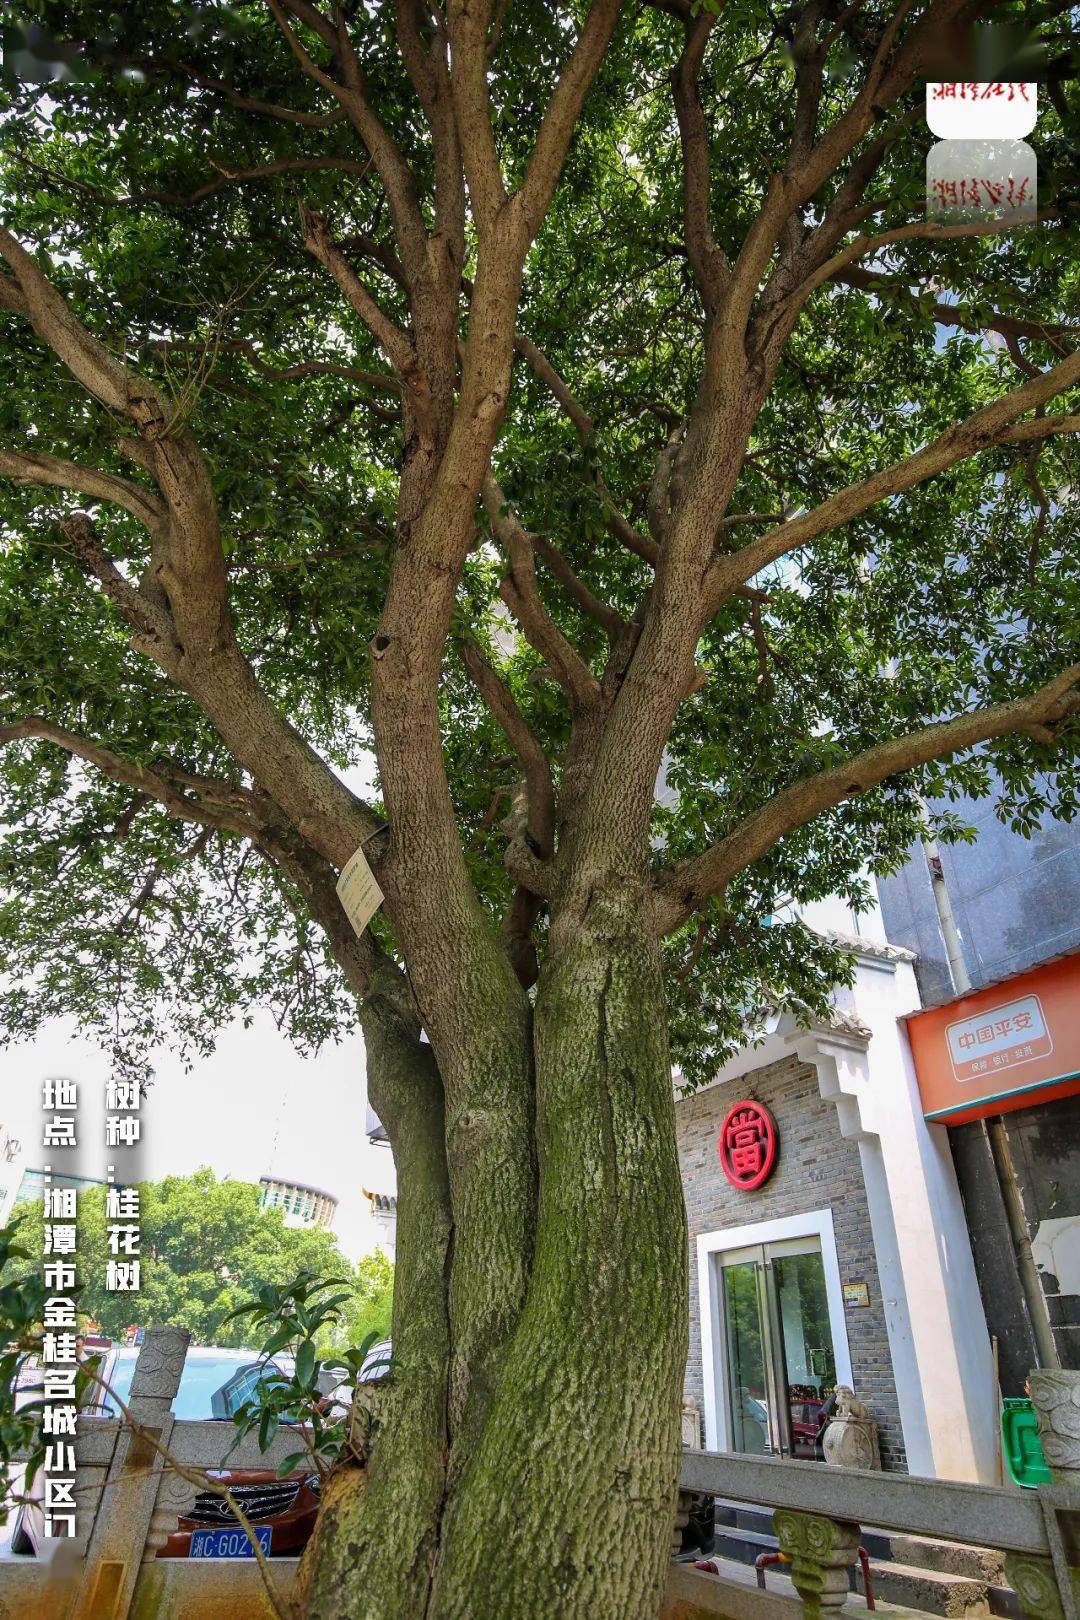 藏于湘潭闹市的这些树,已美了上百年!你认识几棵?